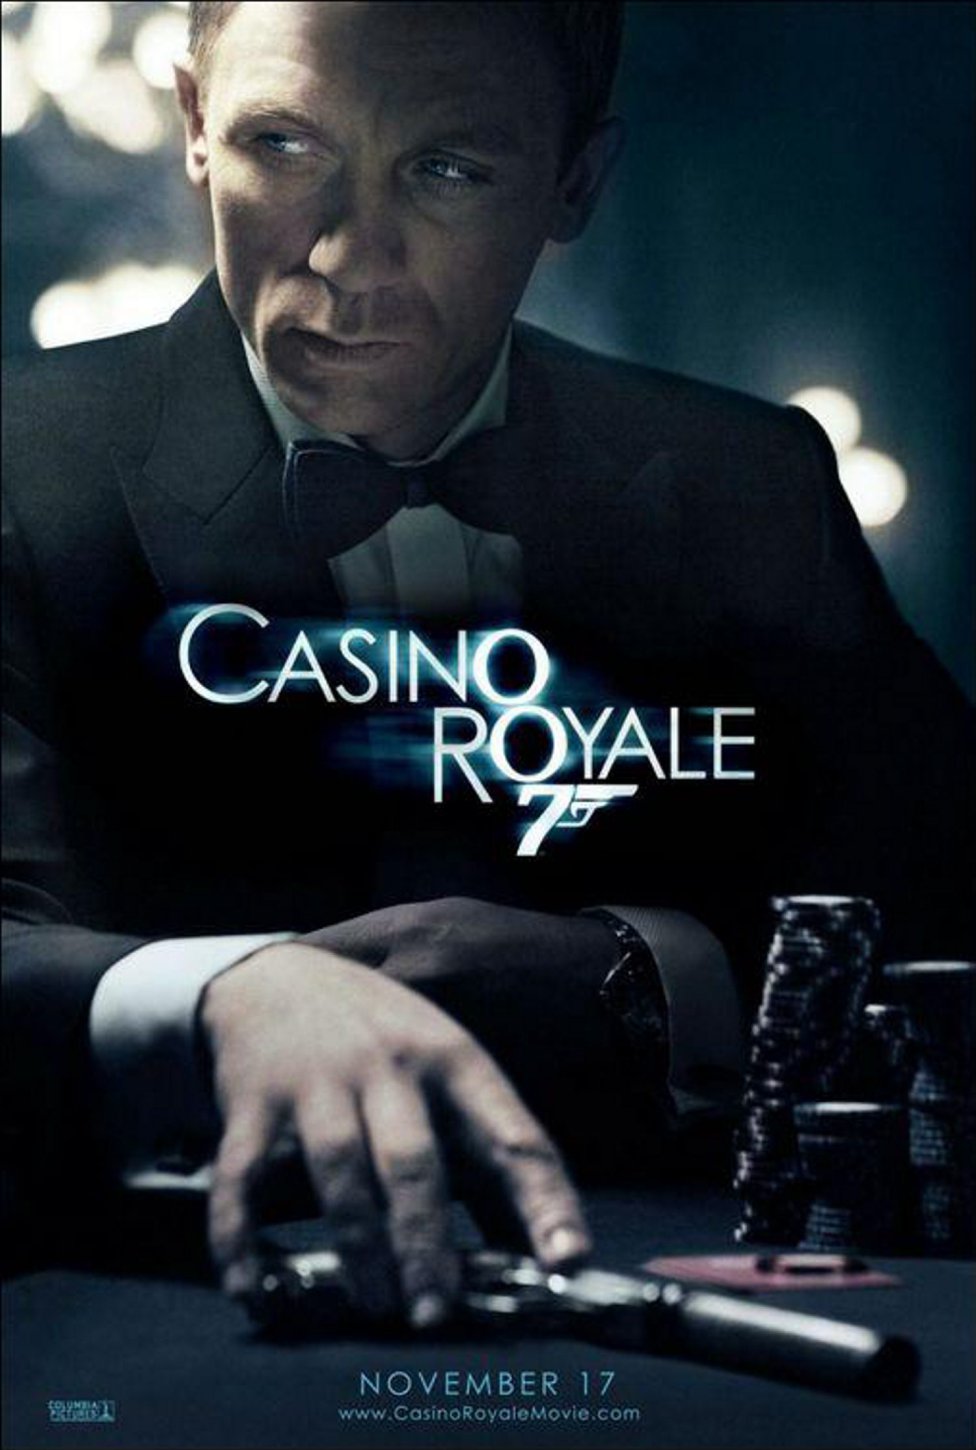 Mejores películas sobre casinos